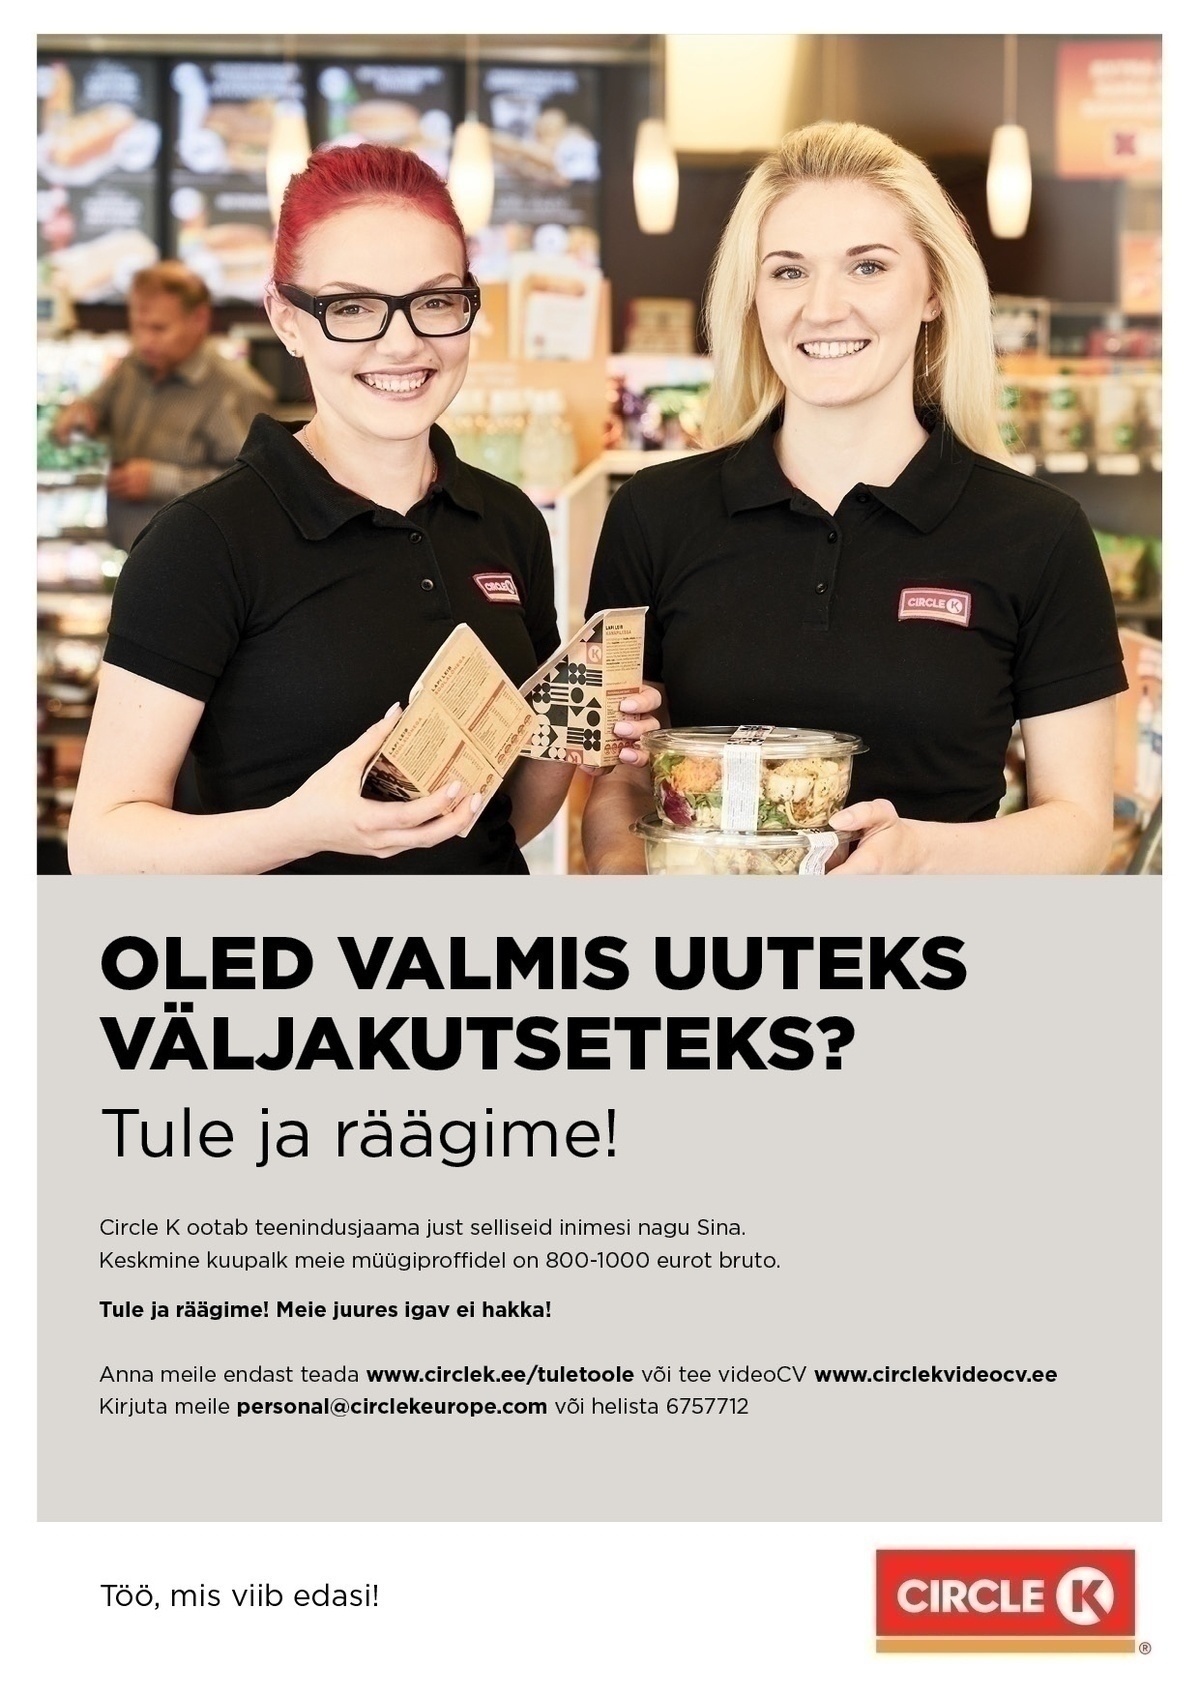 Circle K Eesti AS Müüja-klienditeenindaja Järve ja Nõmme teenindusjaamadesse